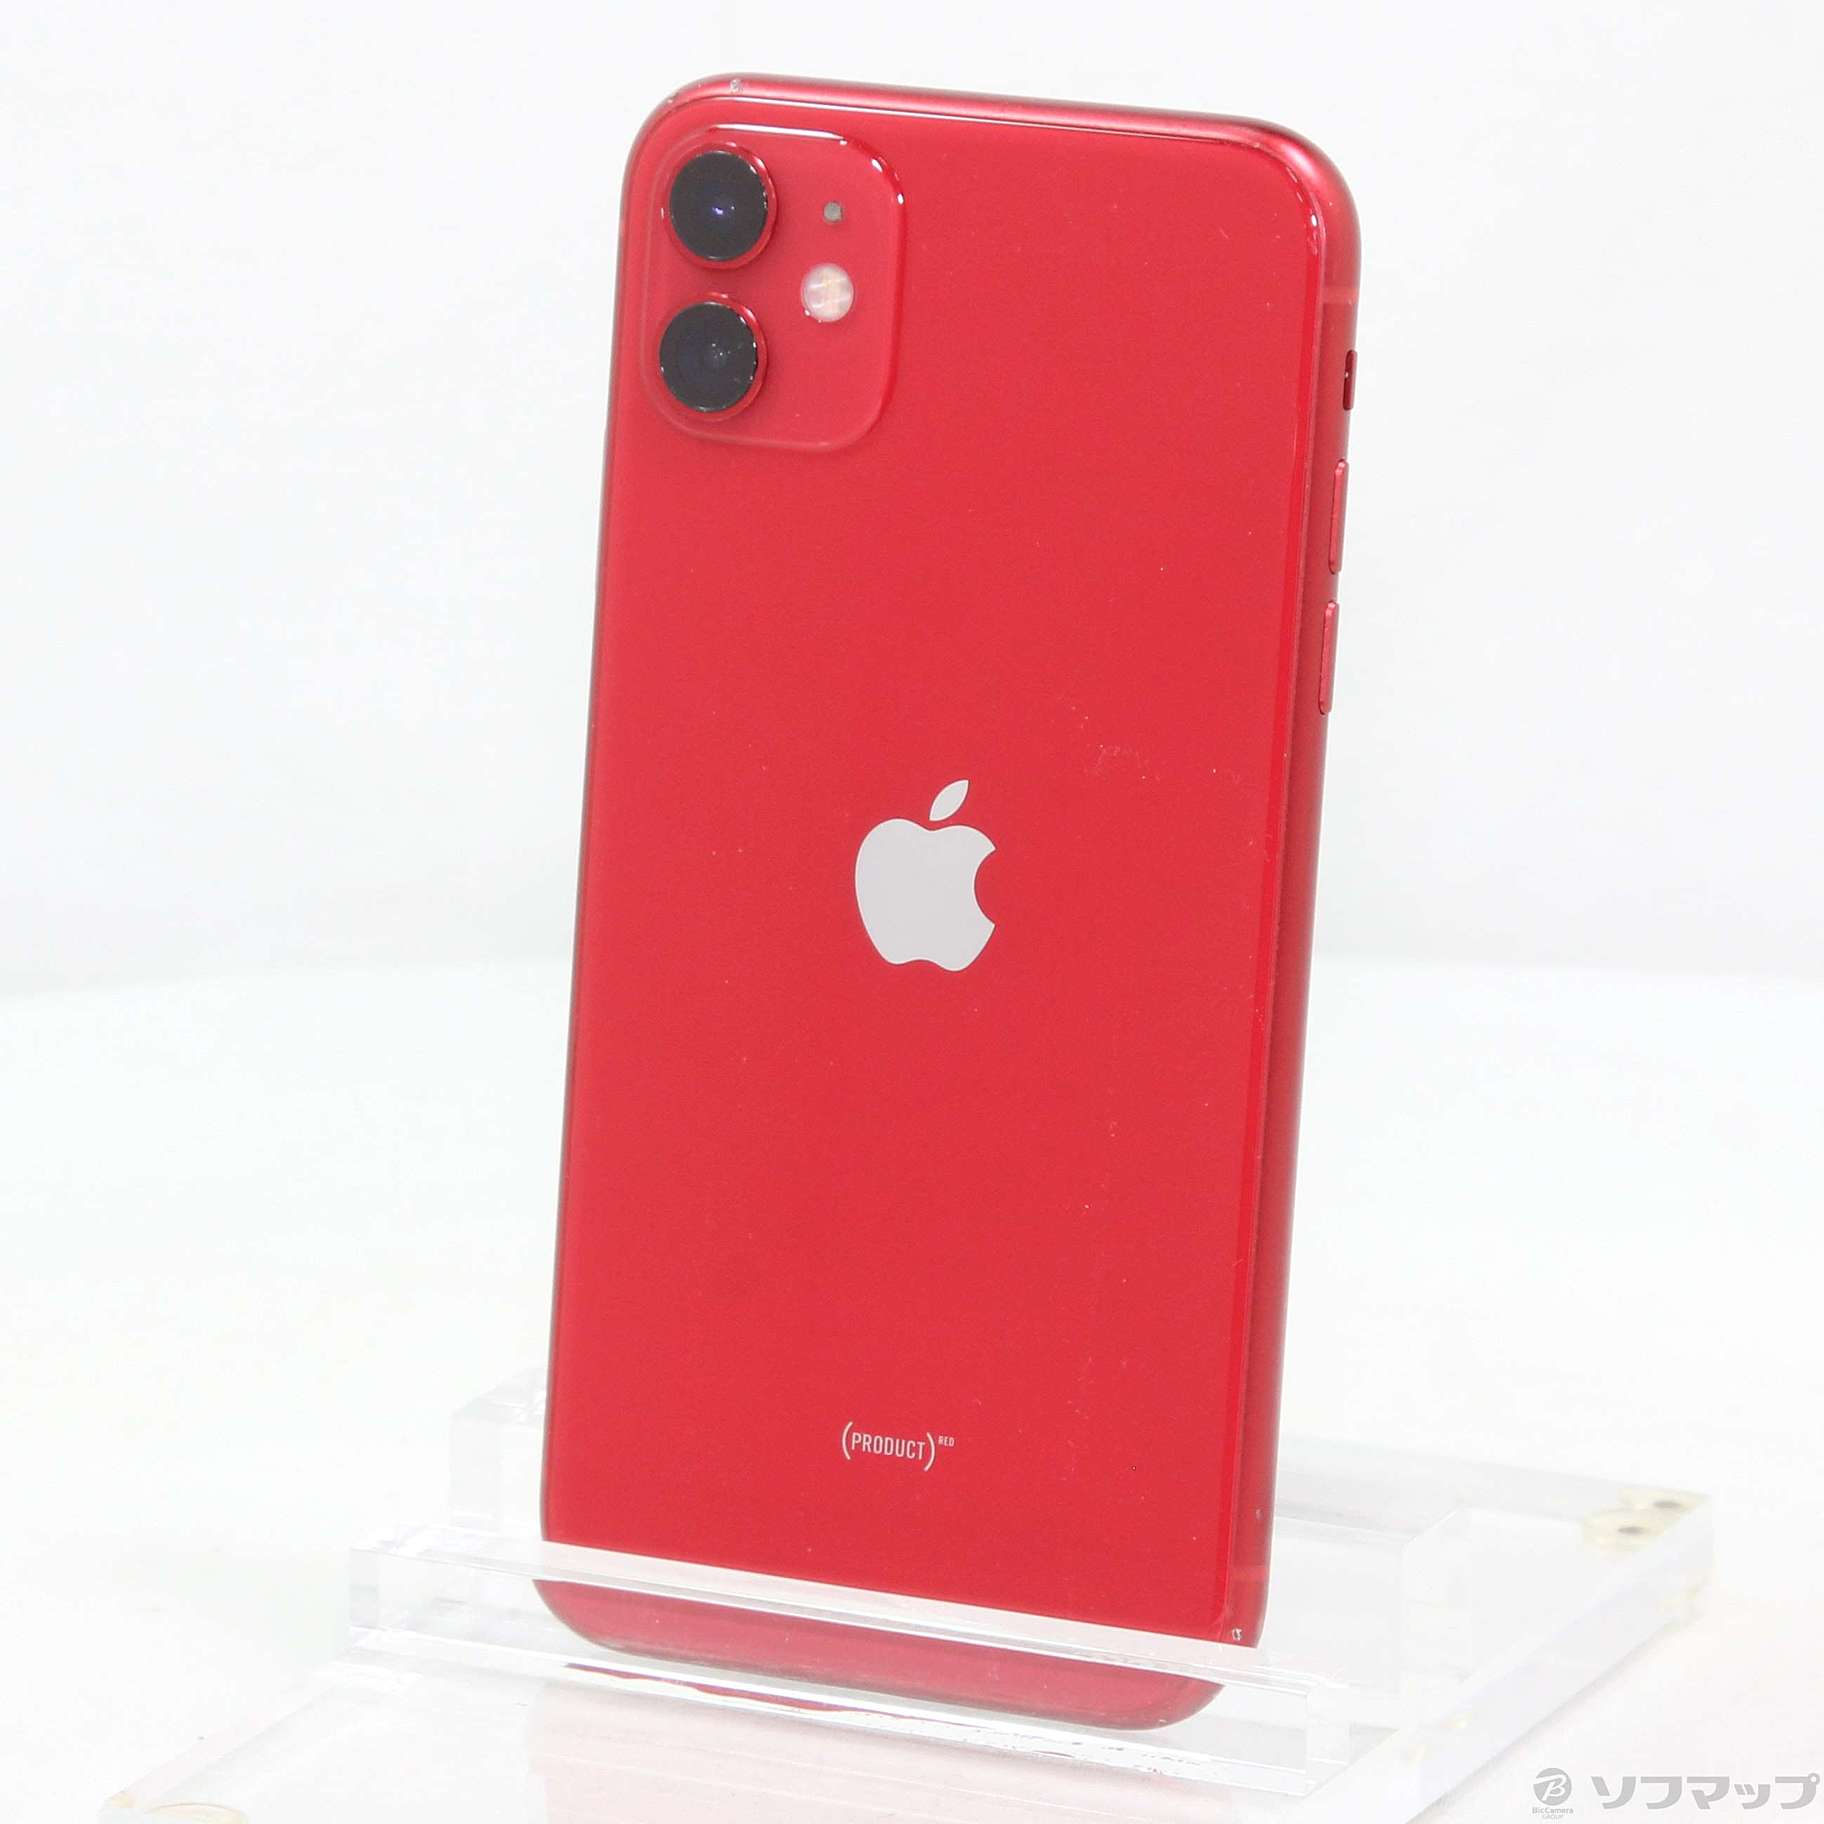 iPhone11 256G SIMフリー RED26000円で大丈夫です